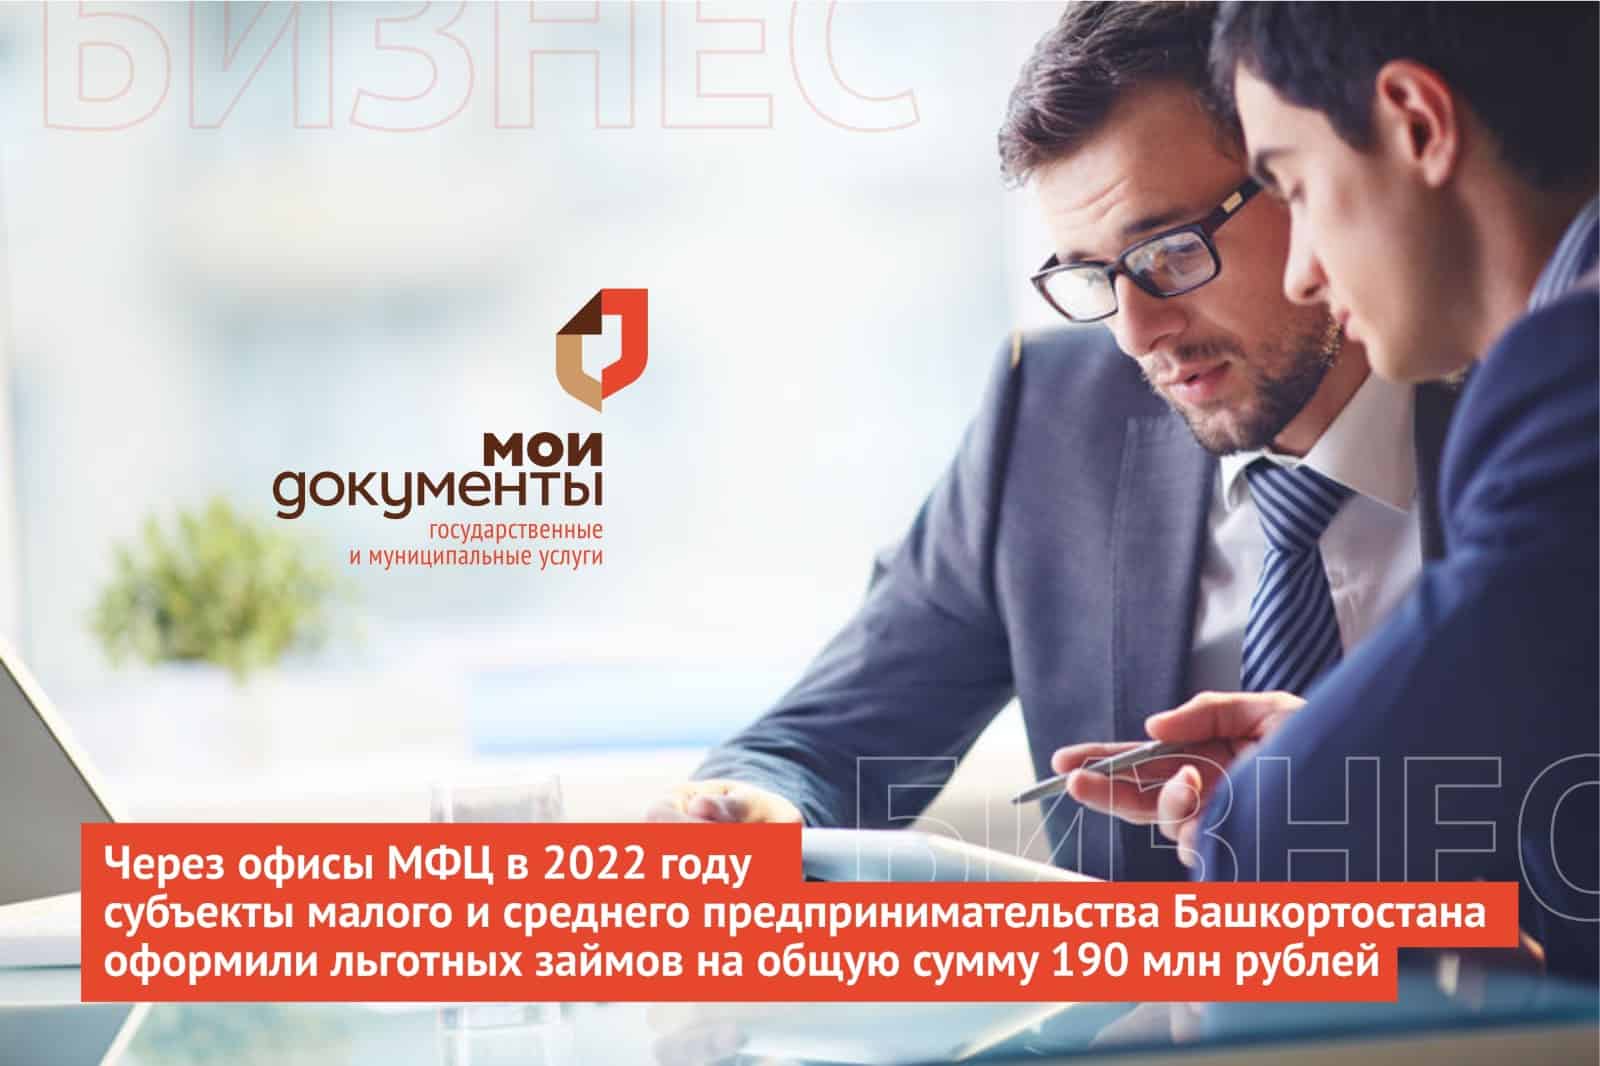 Через офисы МФЦ в 2022 году субъекты малого и среднего предпринимательства Башкортостана оформили льготных займов на общую сумму 190 млн рублей